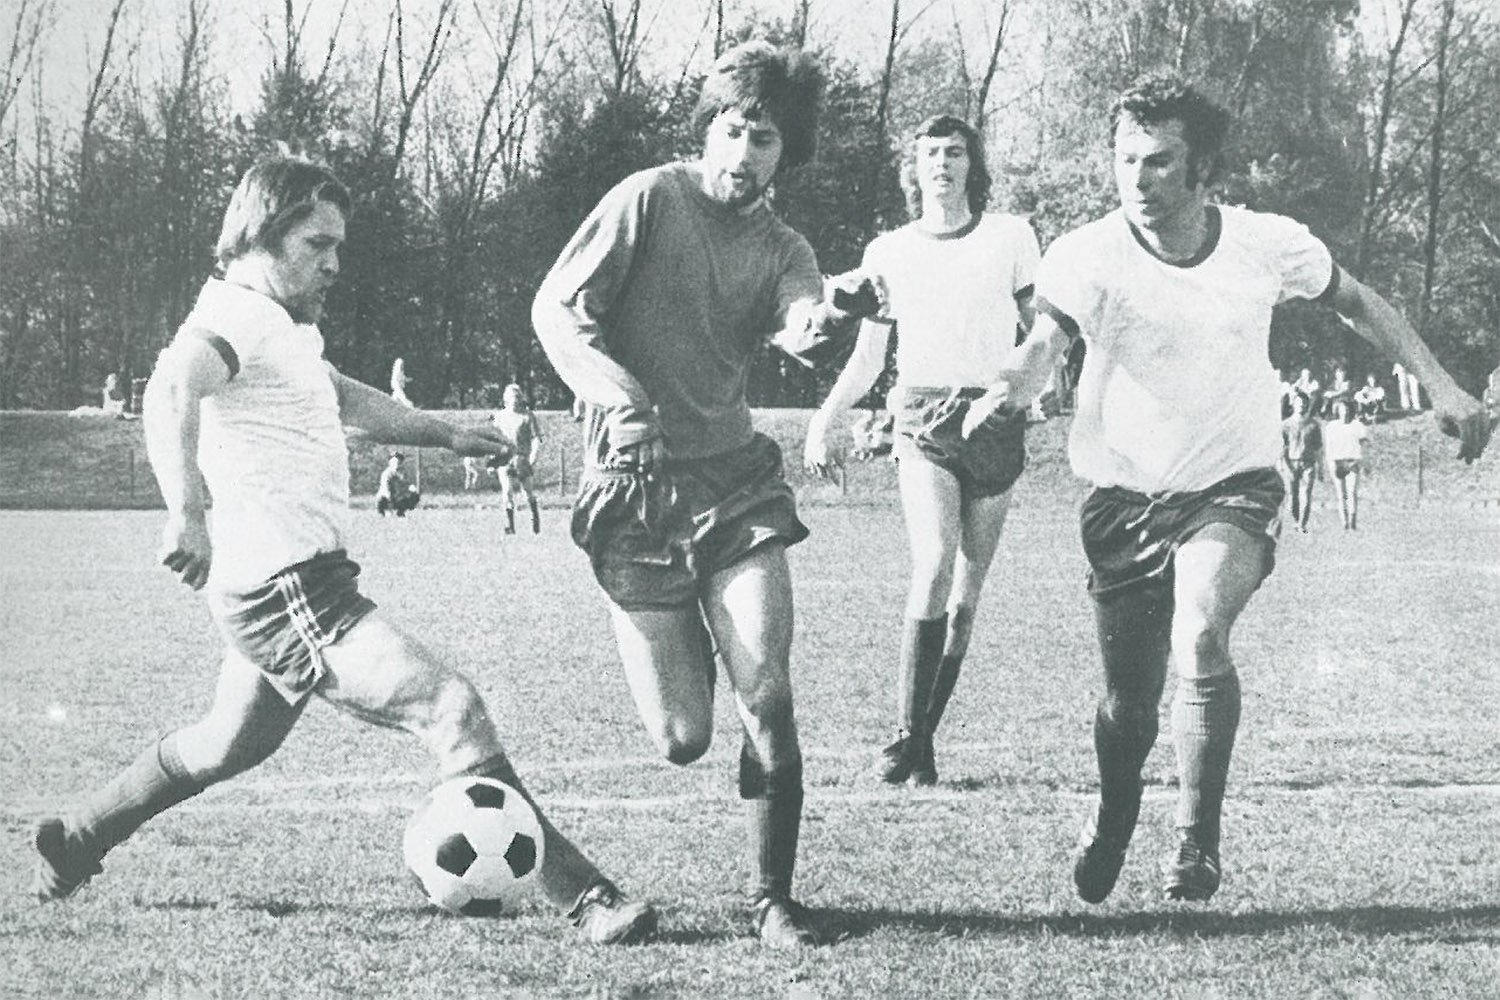 Spielszene aus der Saison 1973/1974 zwischen OT Bremen (helle Trikots) und dem Blumenthaler SV. (Foto: Archiv)